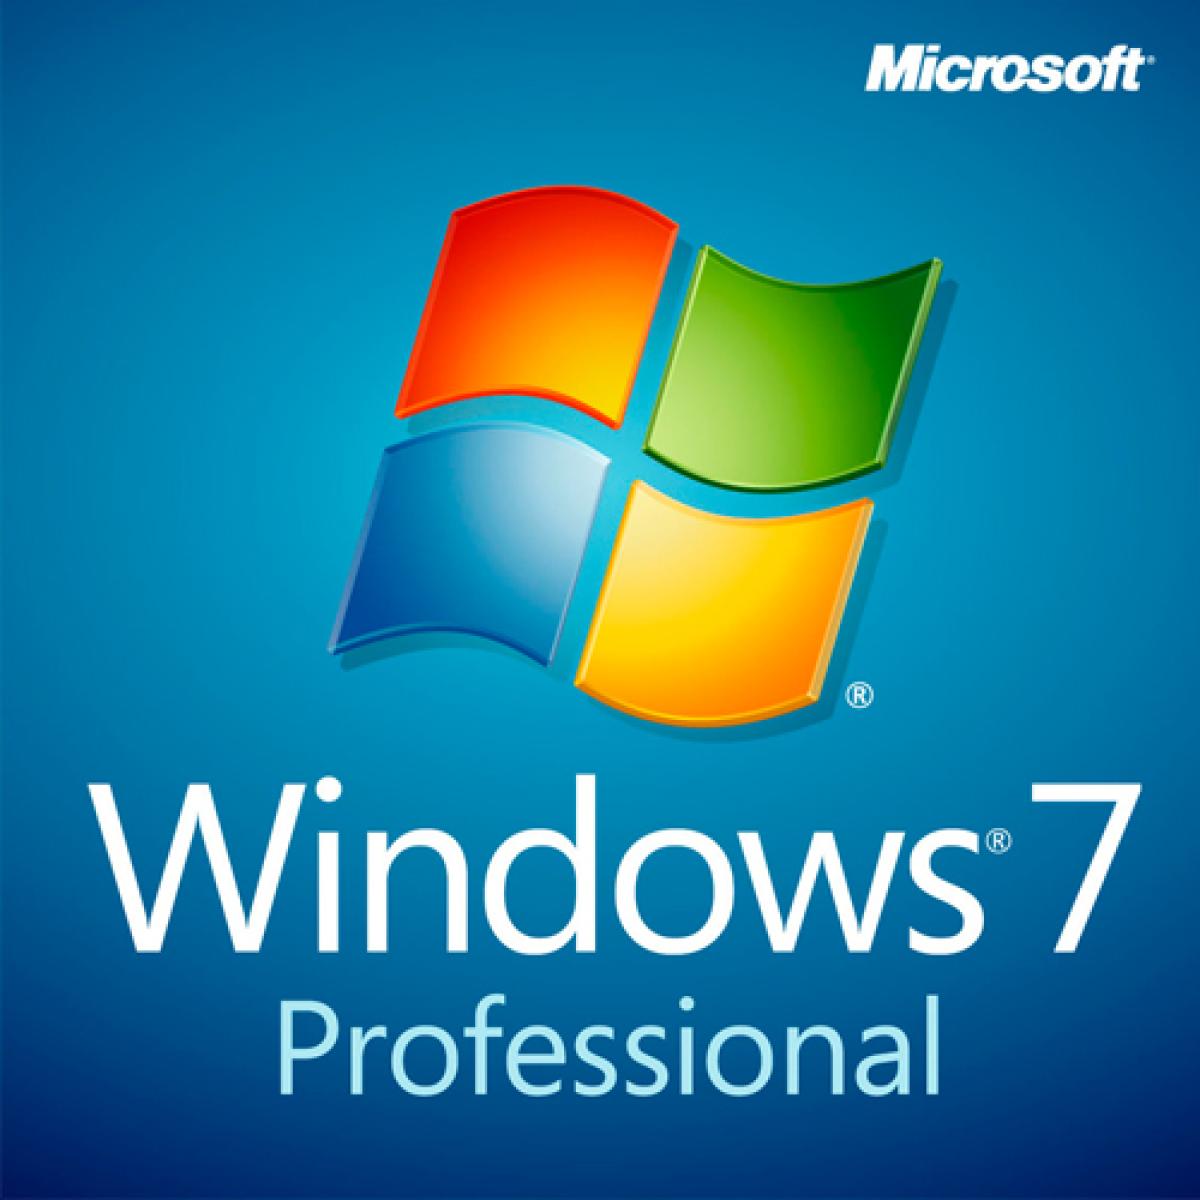 Windows 7 Professional 6432bit Gts Amman Jordan Gts Amman Jordan